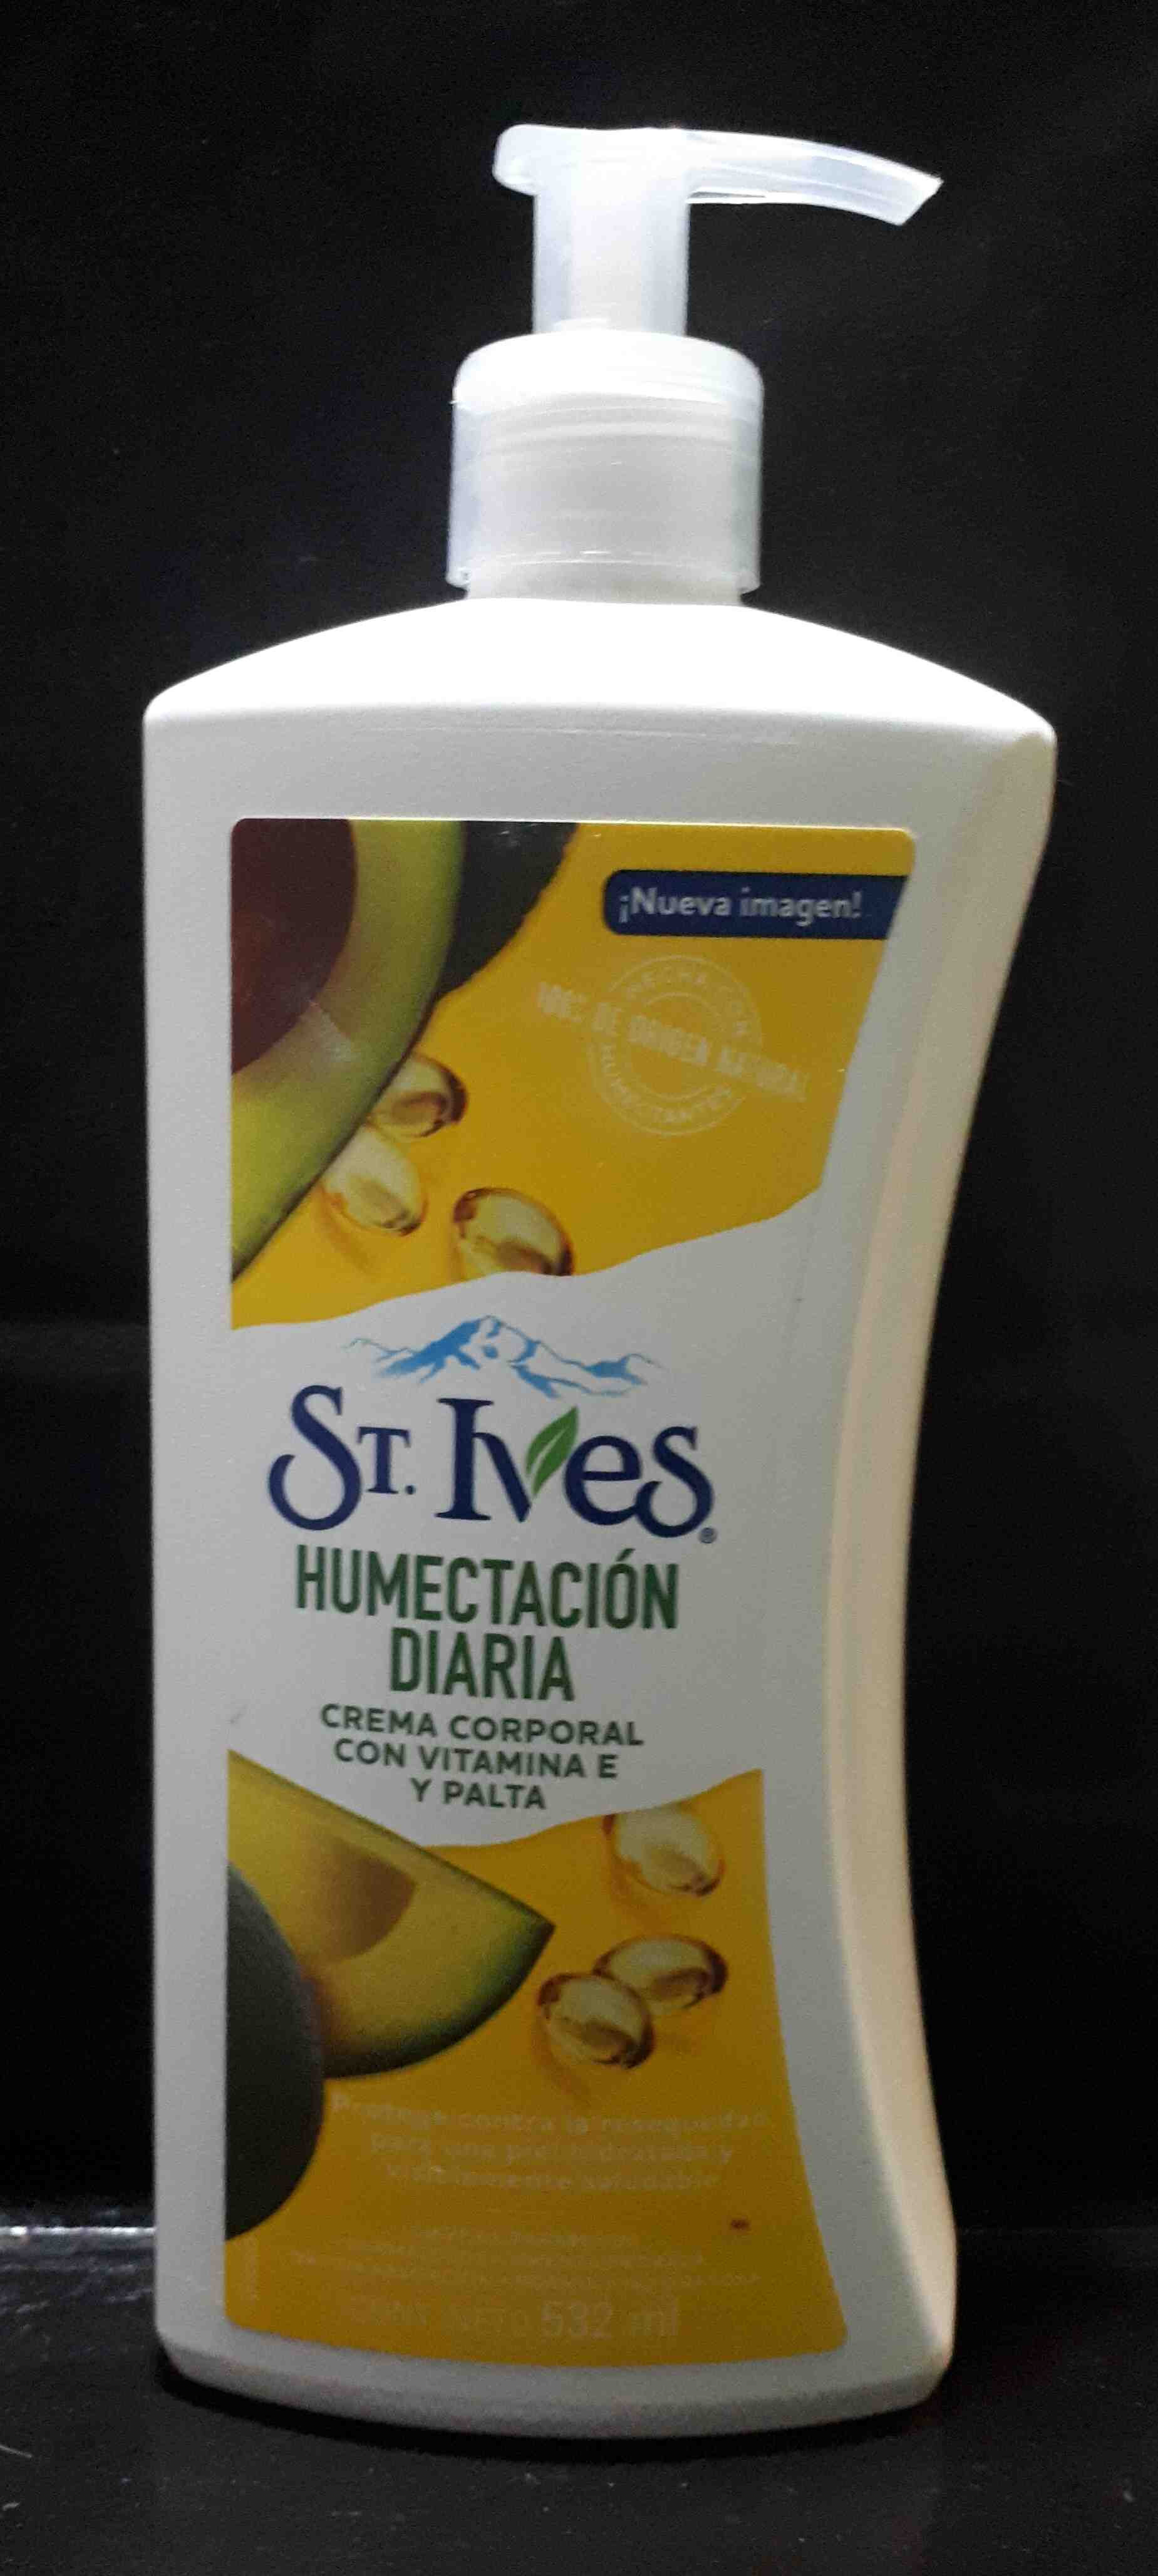 St. Ives. Humectacion diaria. Crema corporal con vitamina E y palta.a - Produit - en